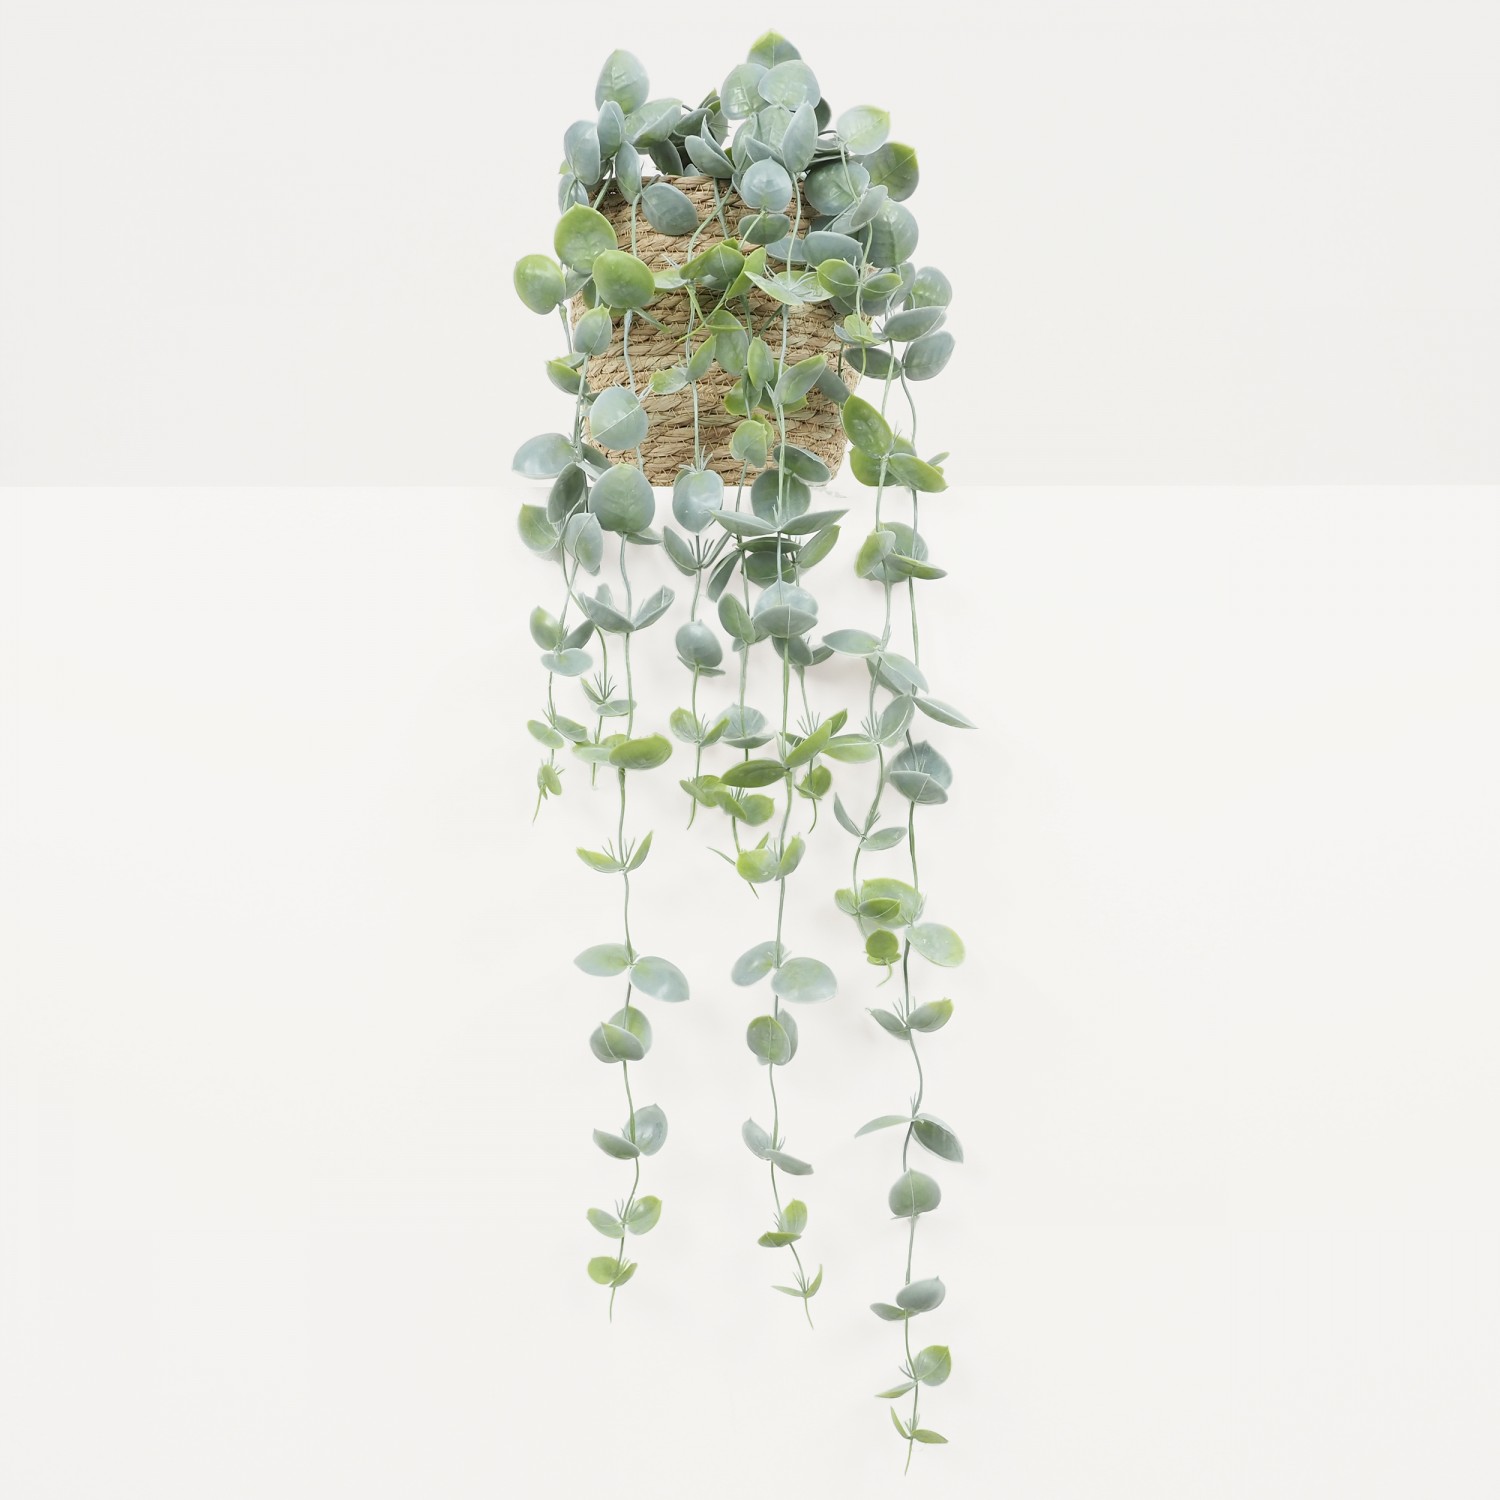 Chute plante artificielle d'eucalyptus 105cm vue de face